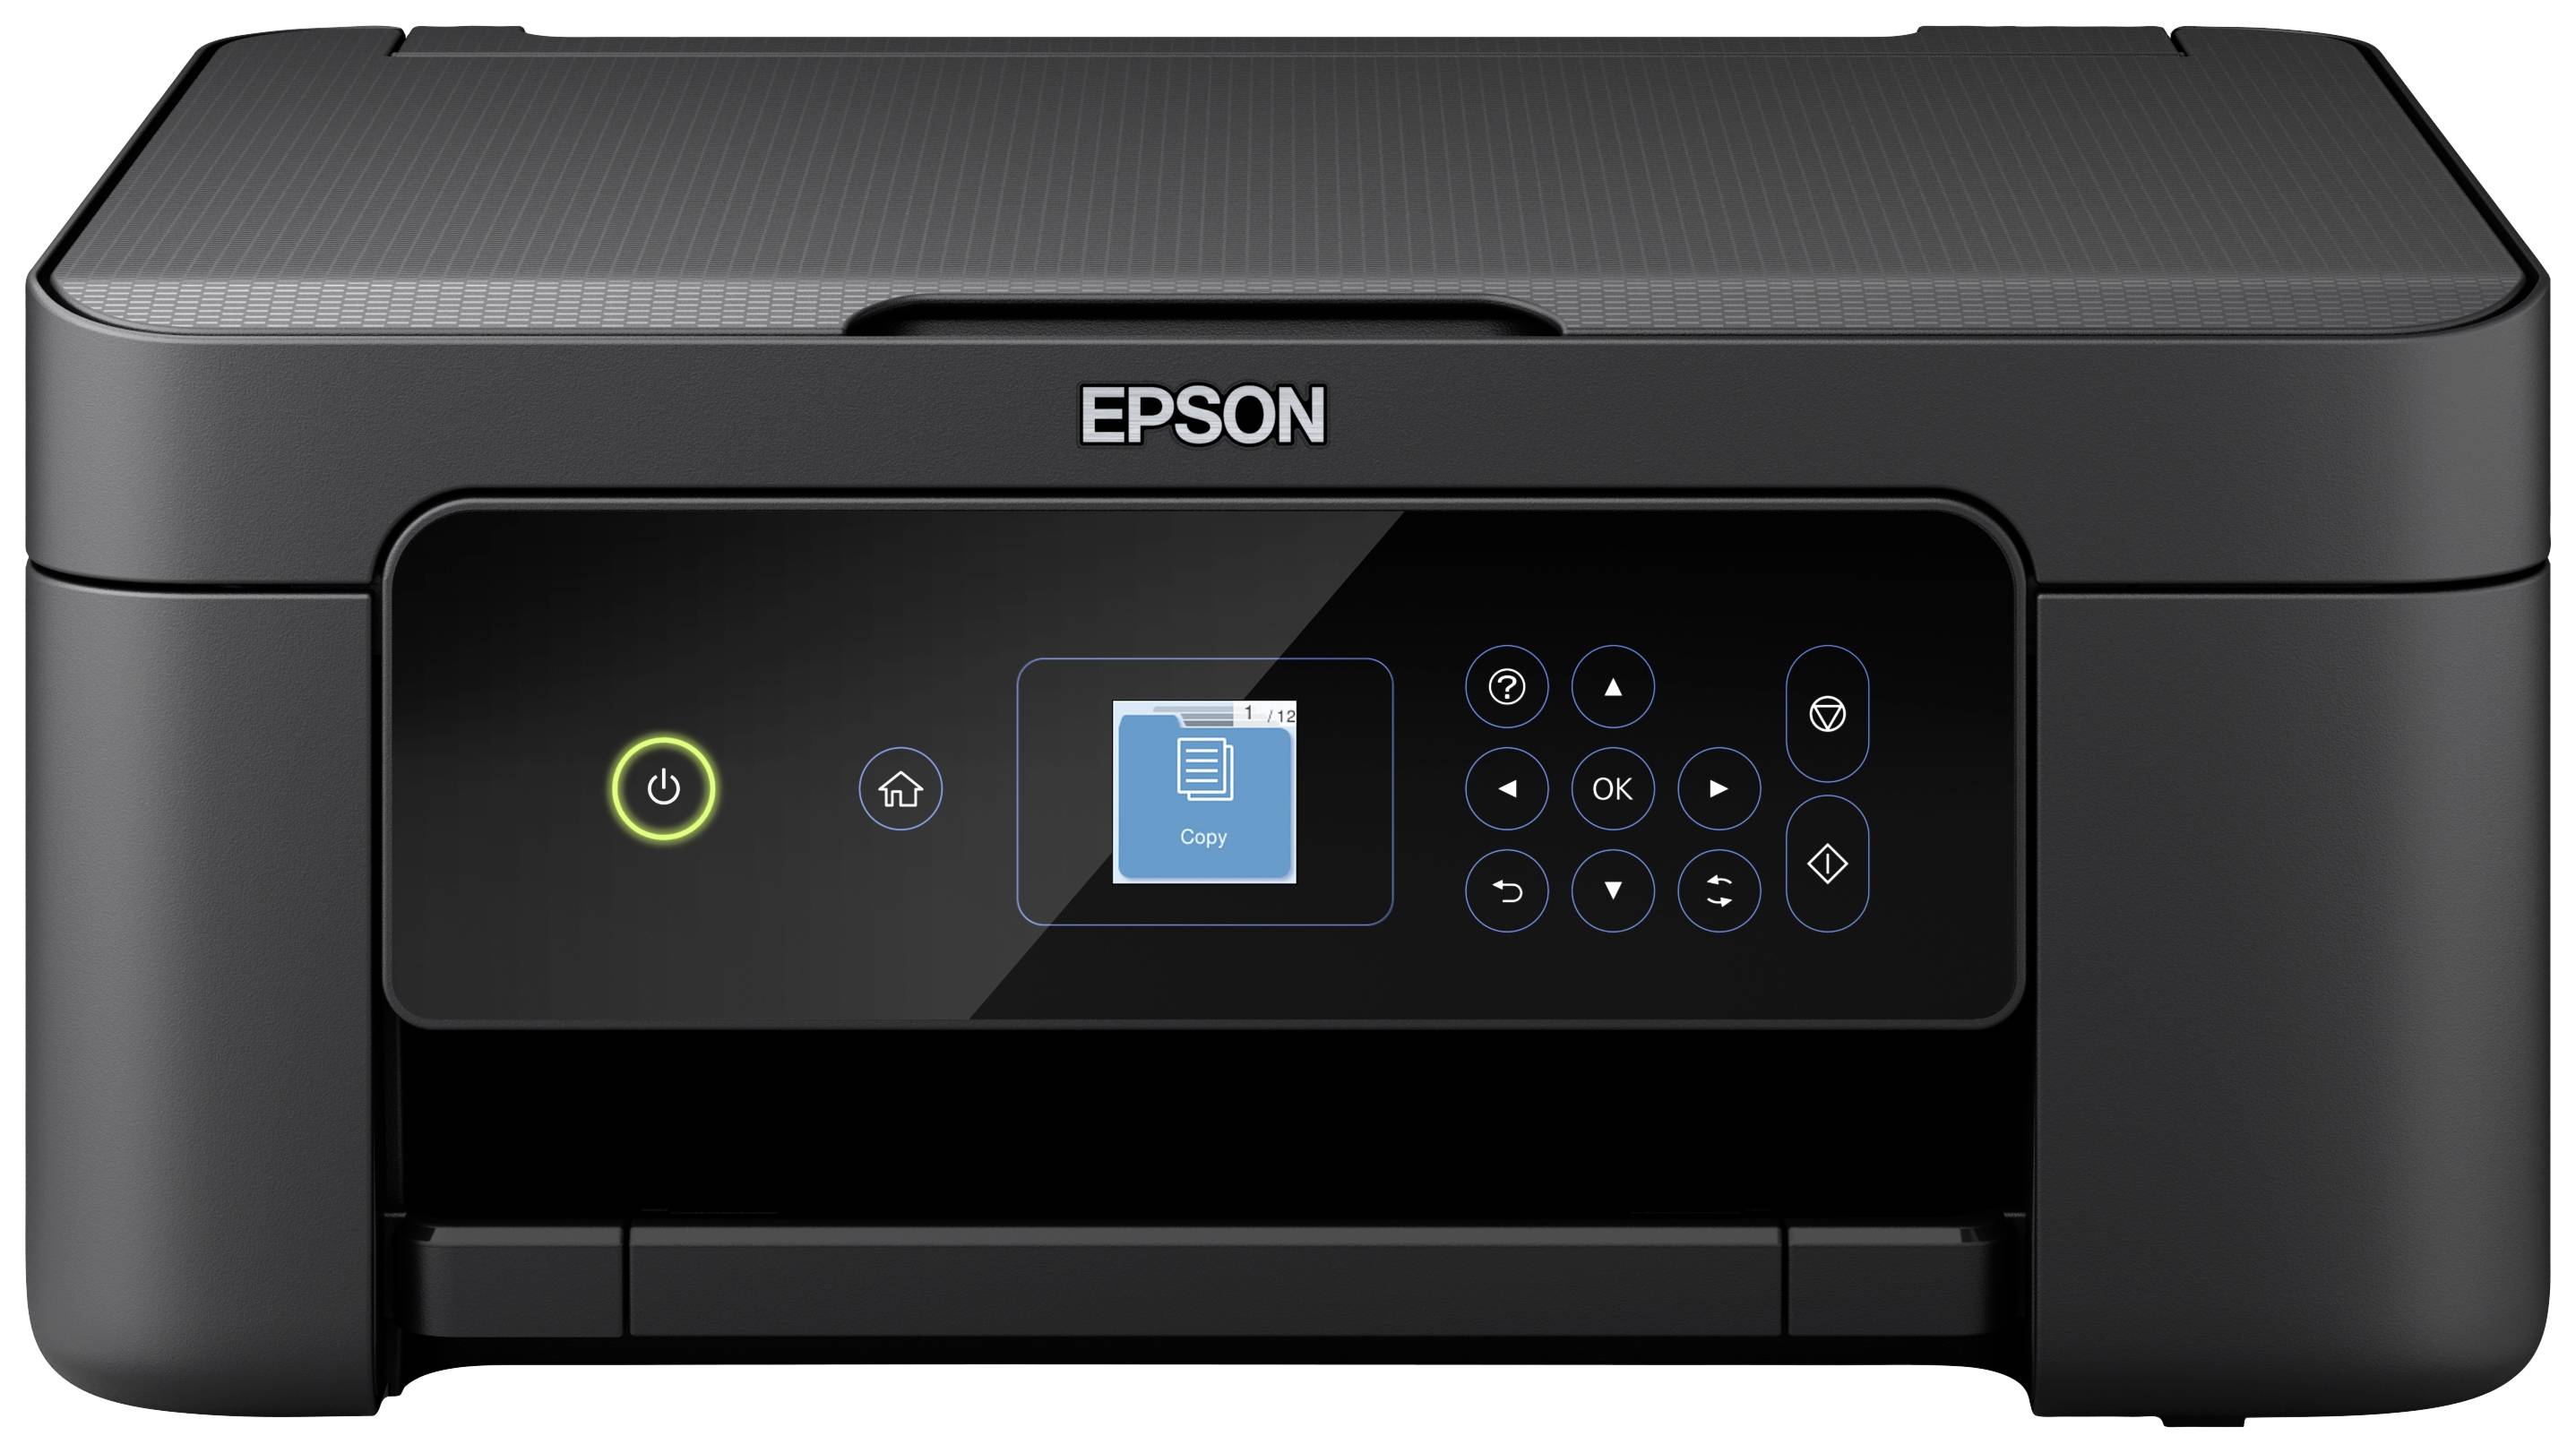 Epson Expression Home USB, WLAN Duplex, Kopierer Tintenstrahl Scanner, XP-3205 Multifunktionsdrucker A4 kaufen Farb Drucker